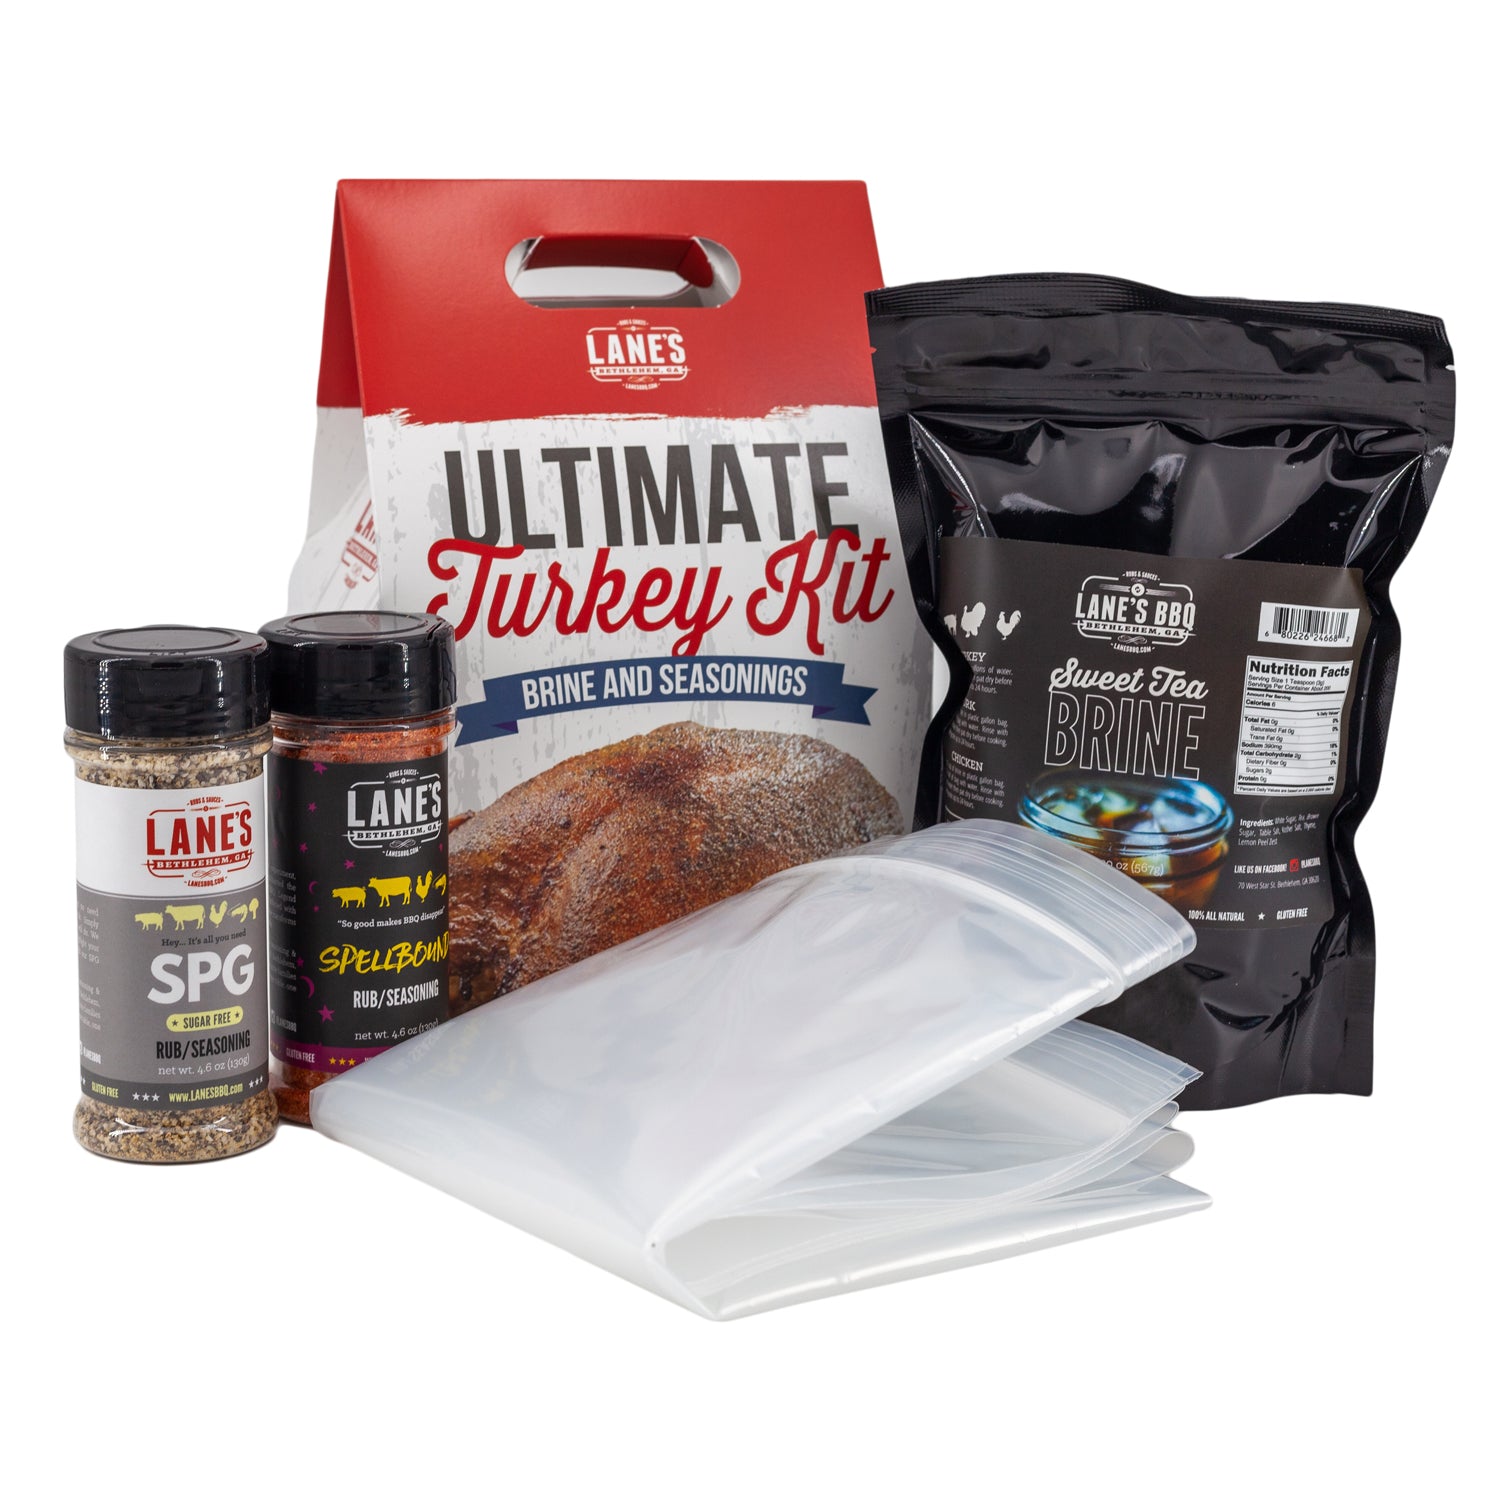 Ultimate Turkey Brine Kit with Bag (Brine + Rubs + Brine Bag)